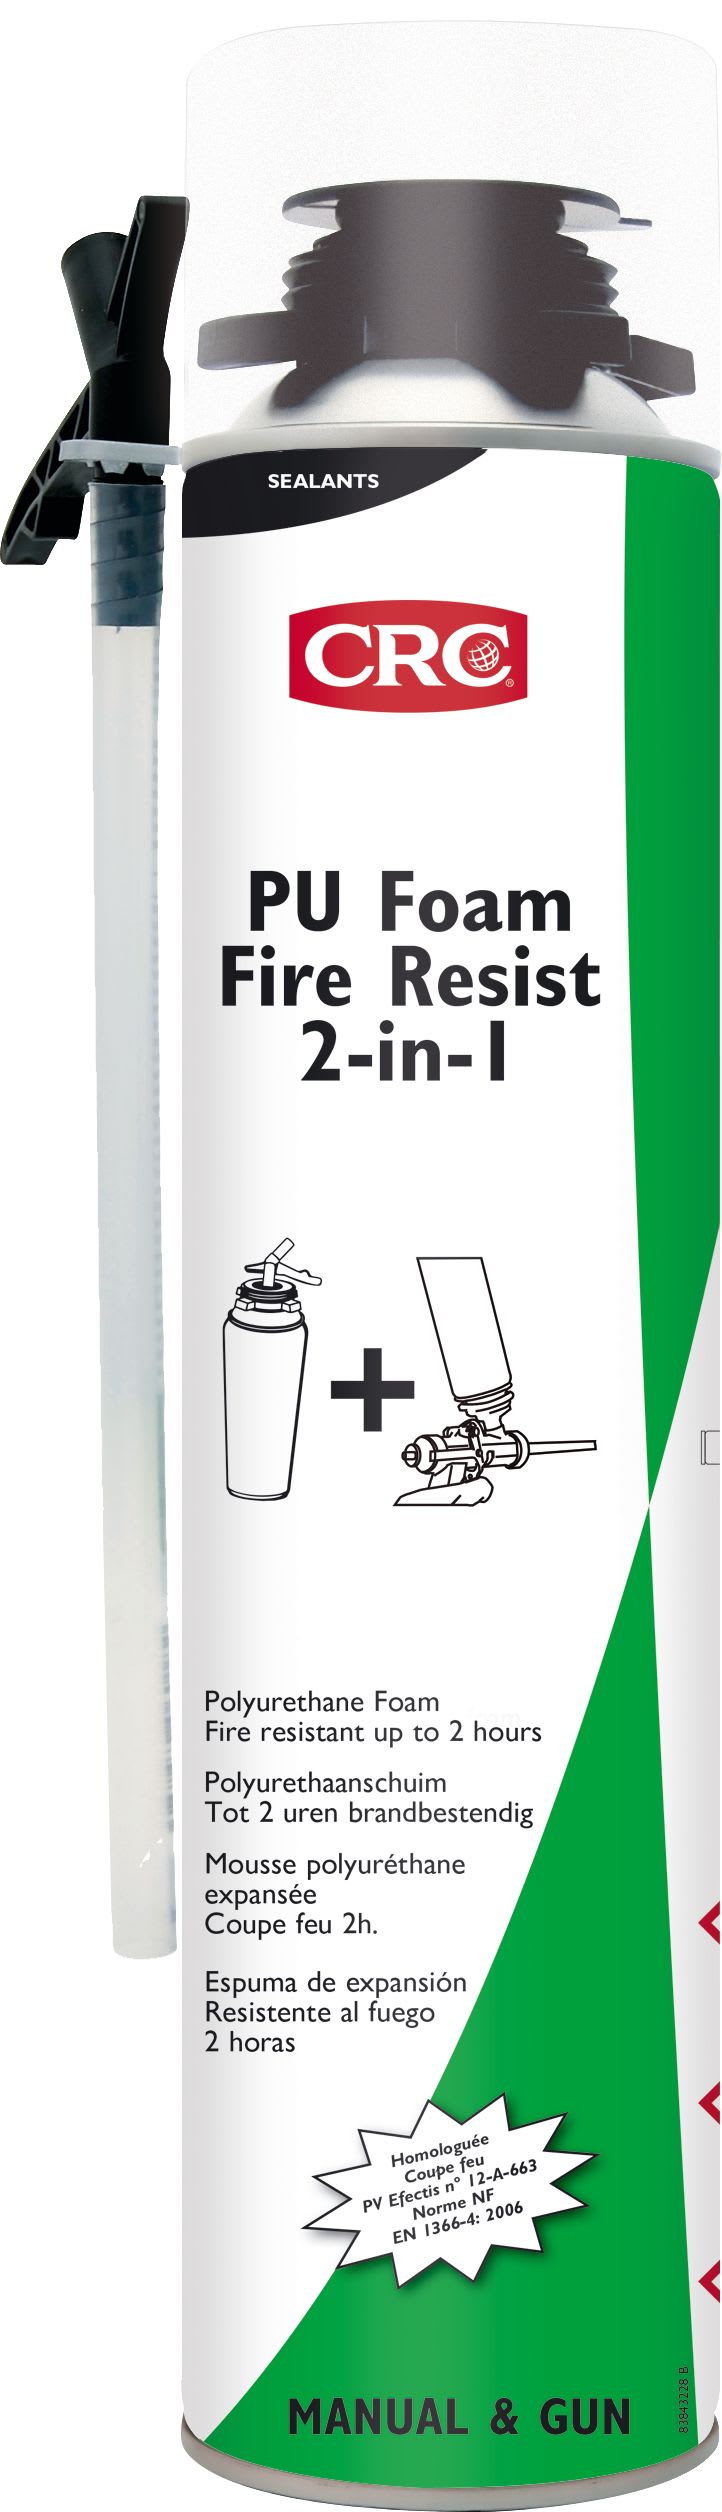 Kf - PU Foam Fire Resist 2-in-1 750 ML